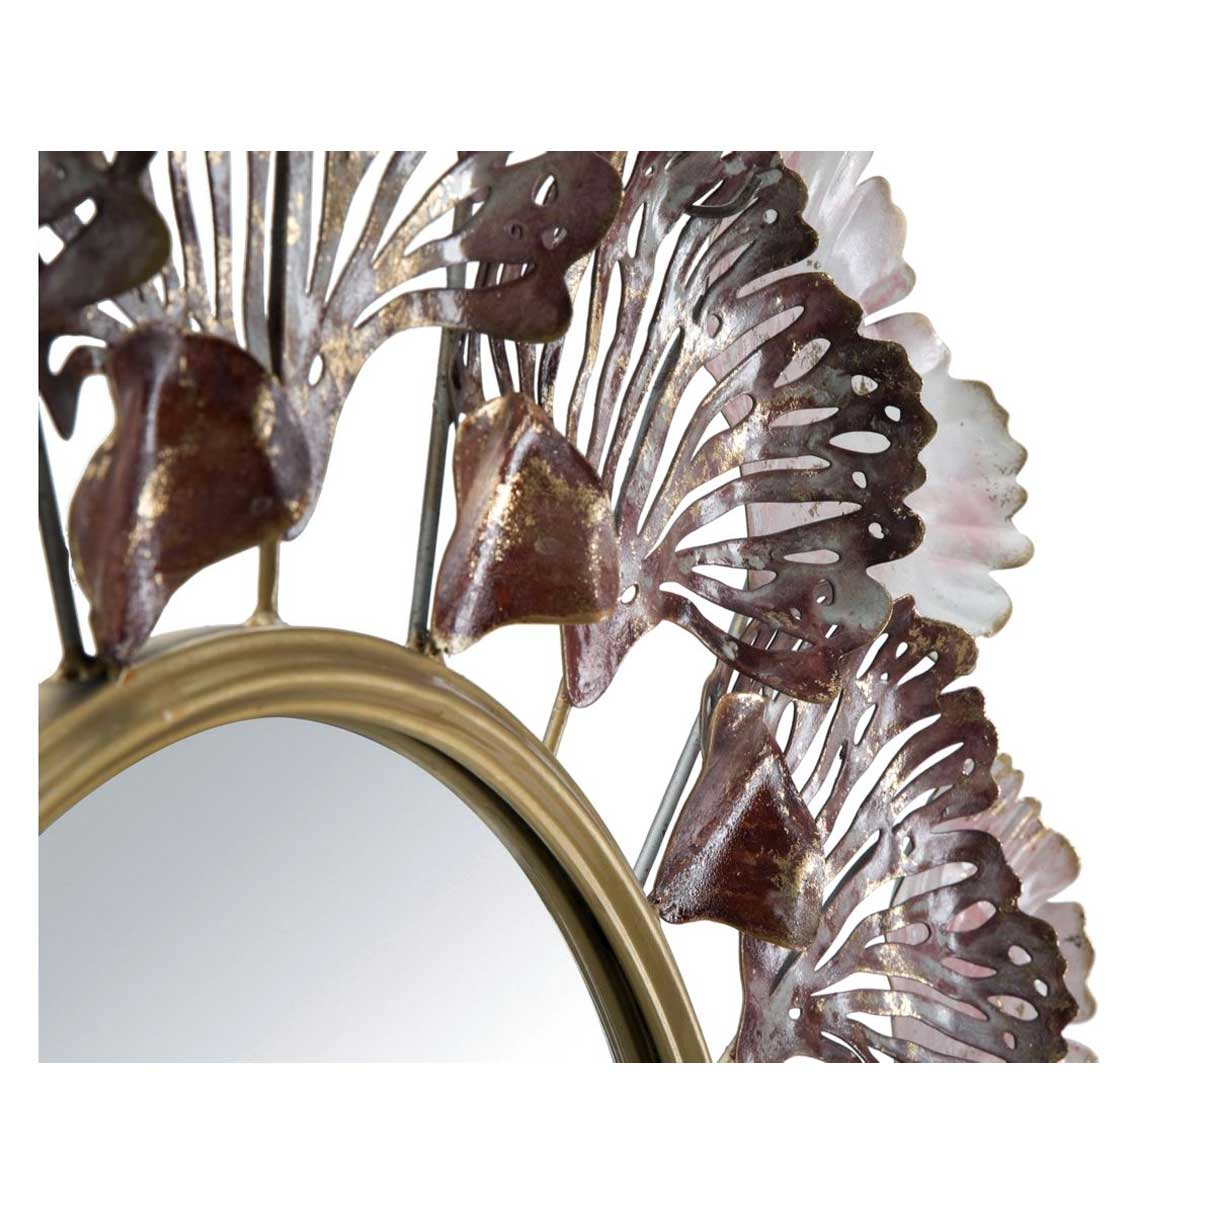 MAURO FERRETTI - Specchio in Ferro Leaves 94cm 0660190000